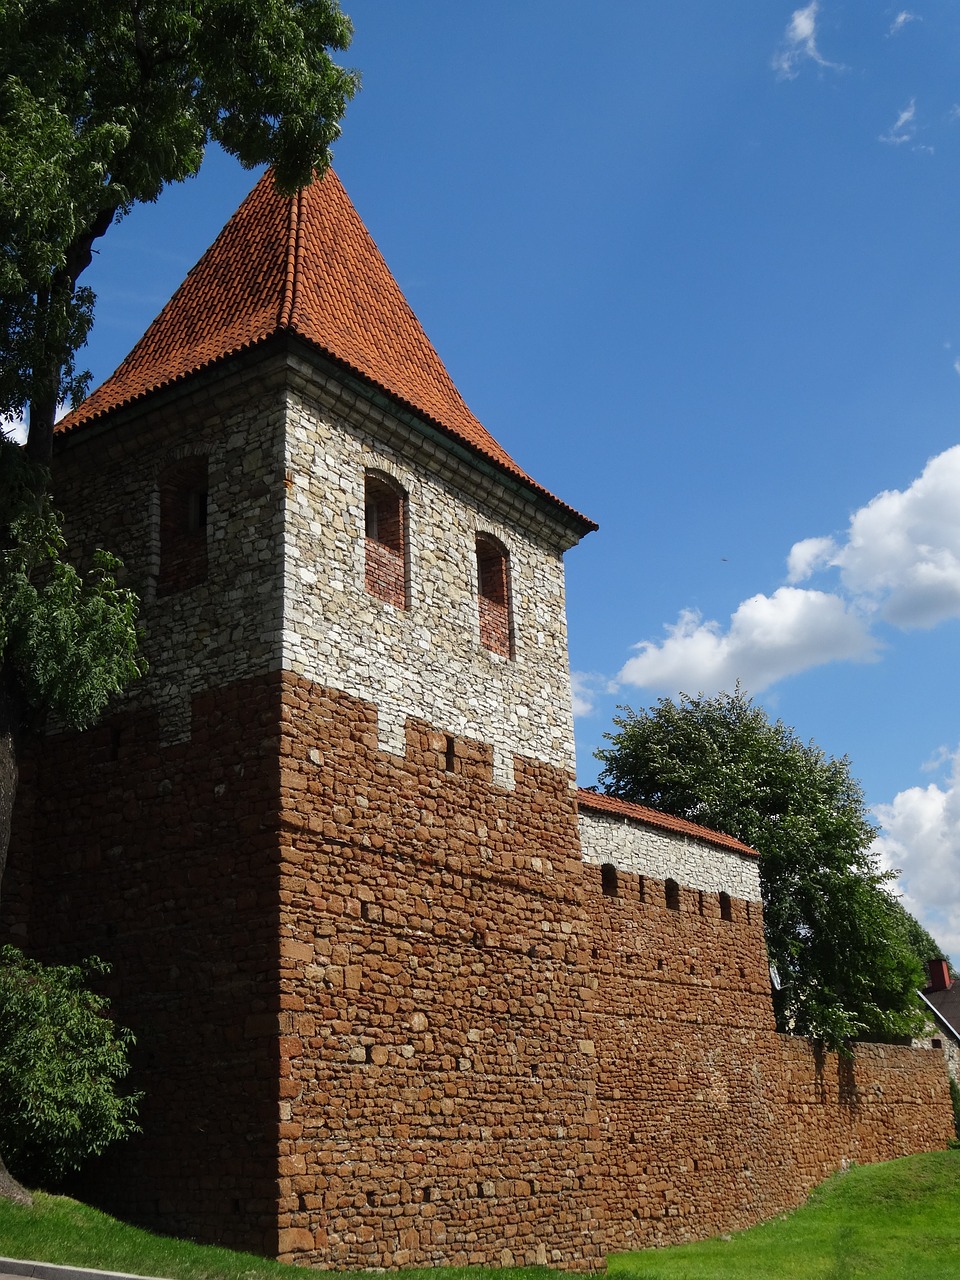 olkusz poland tower free photo